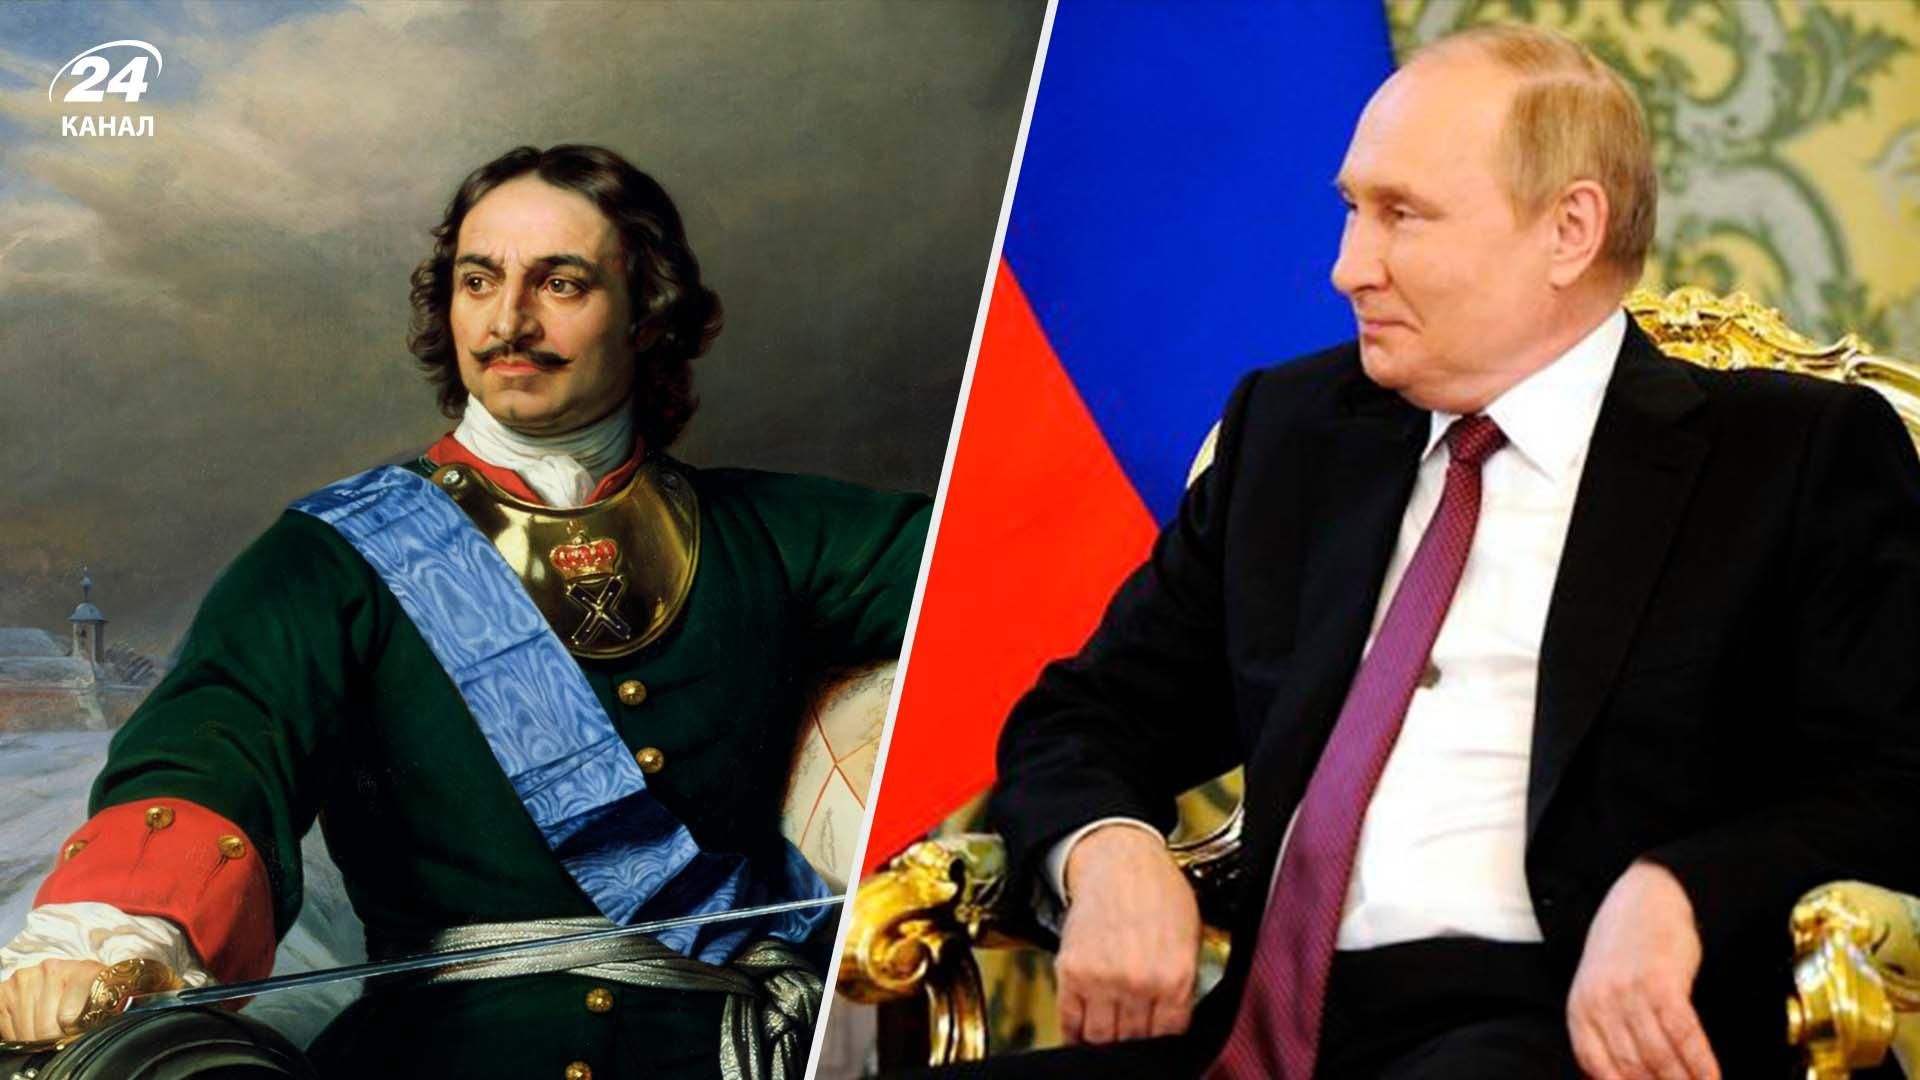 Путін на промові у день Росії цинічно висловив "гордість" і знову порівняв себе з Петром I